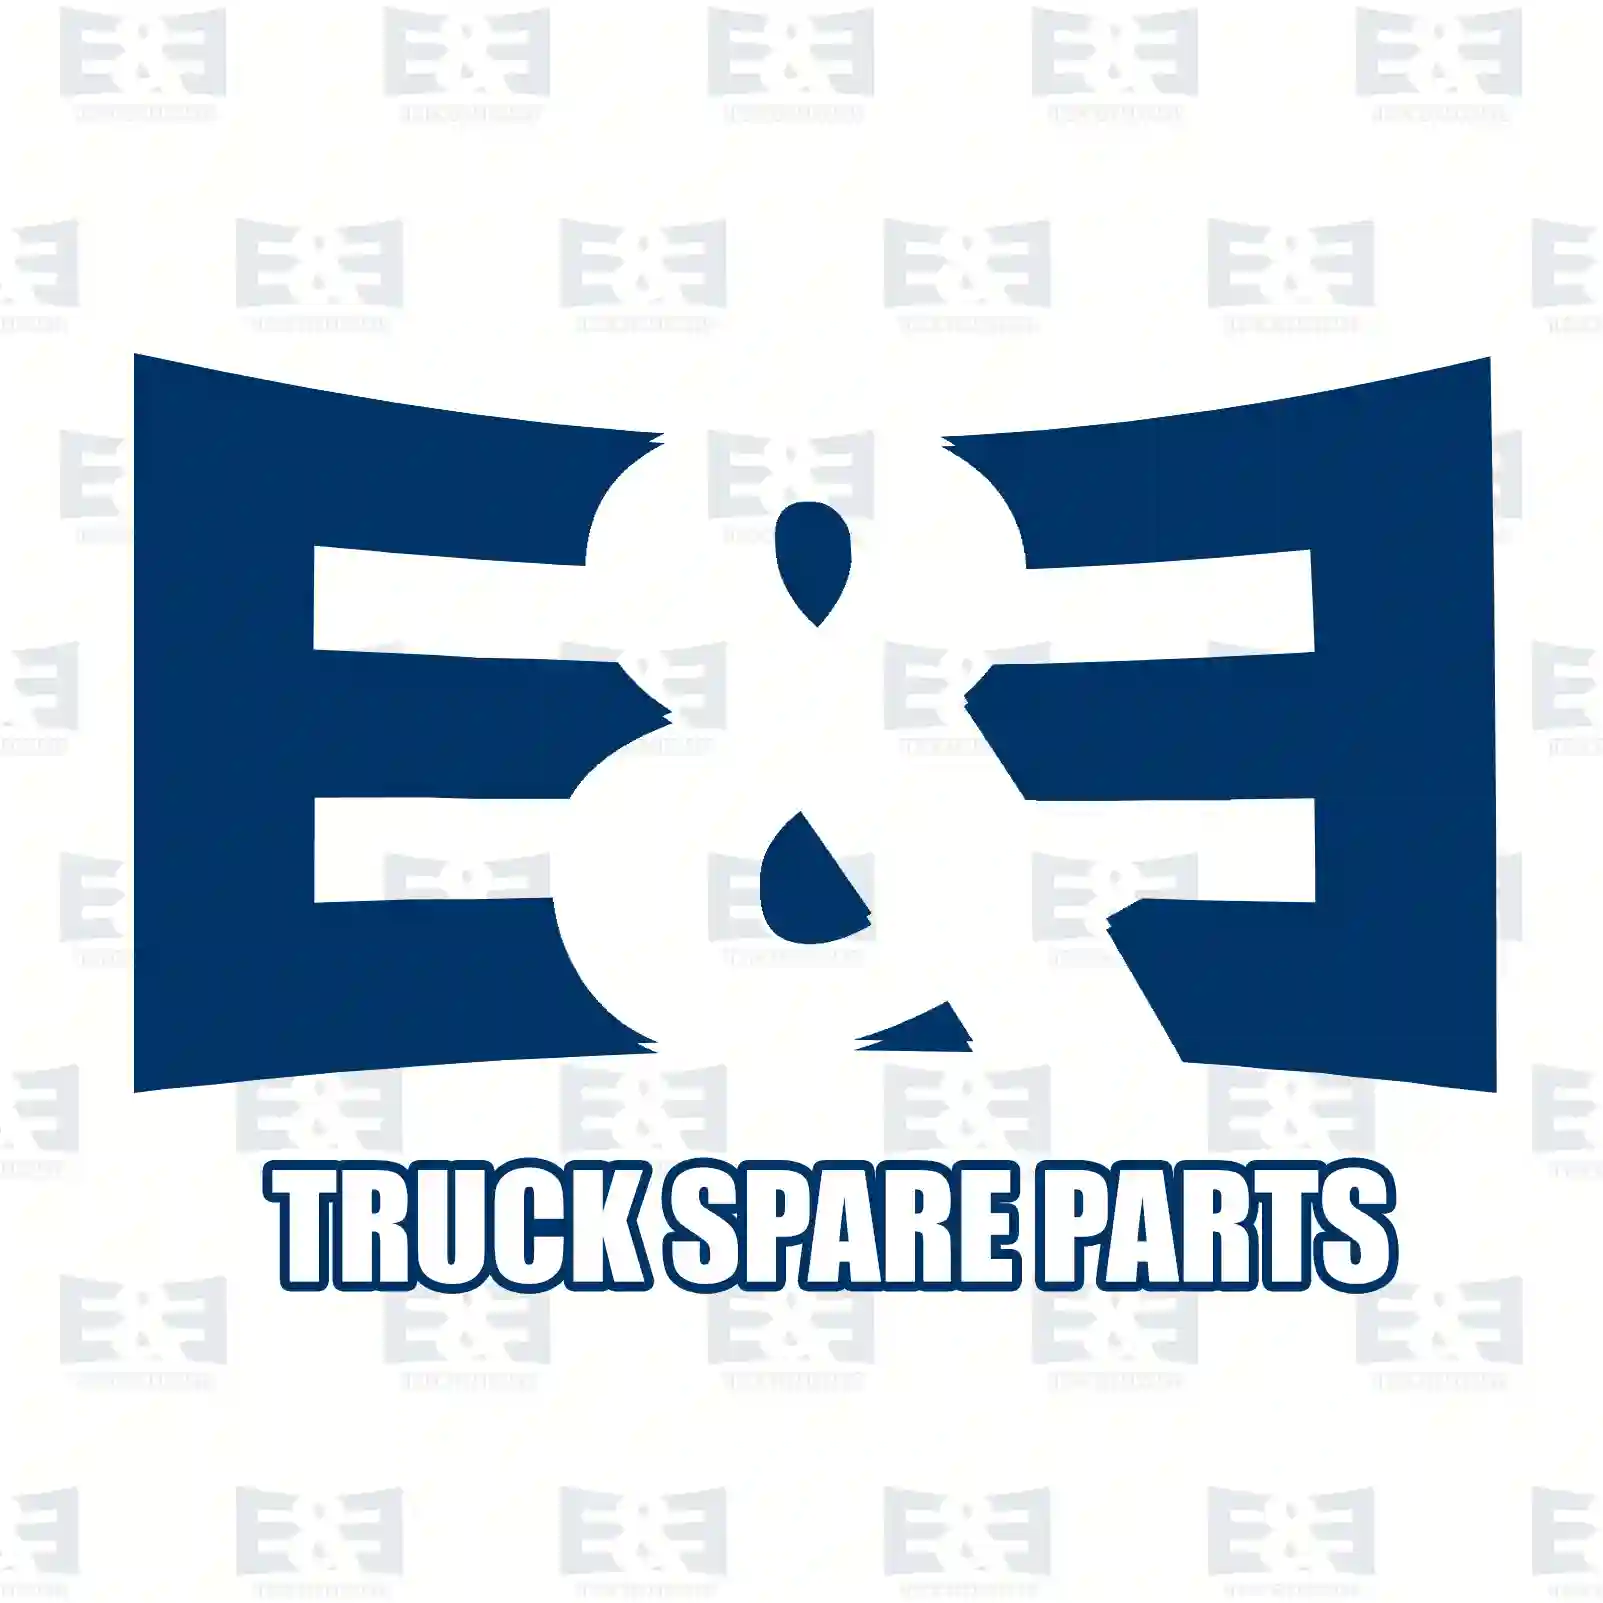 Main shaft, 2E2278793, 7420532222, 20532 ||  2E2278793 E&E Truck Spare Parts | Truck Spare Parts, Auotomotive Spare Parts Main shaft, 2E2278793, 7420532222, 20532 ||  2E2278793 E&E Truck Spare Parts | Truck Spare Parts, Auotomotive Spare Parts